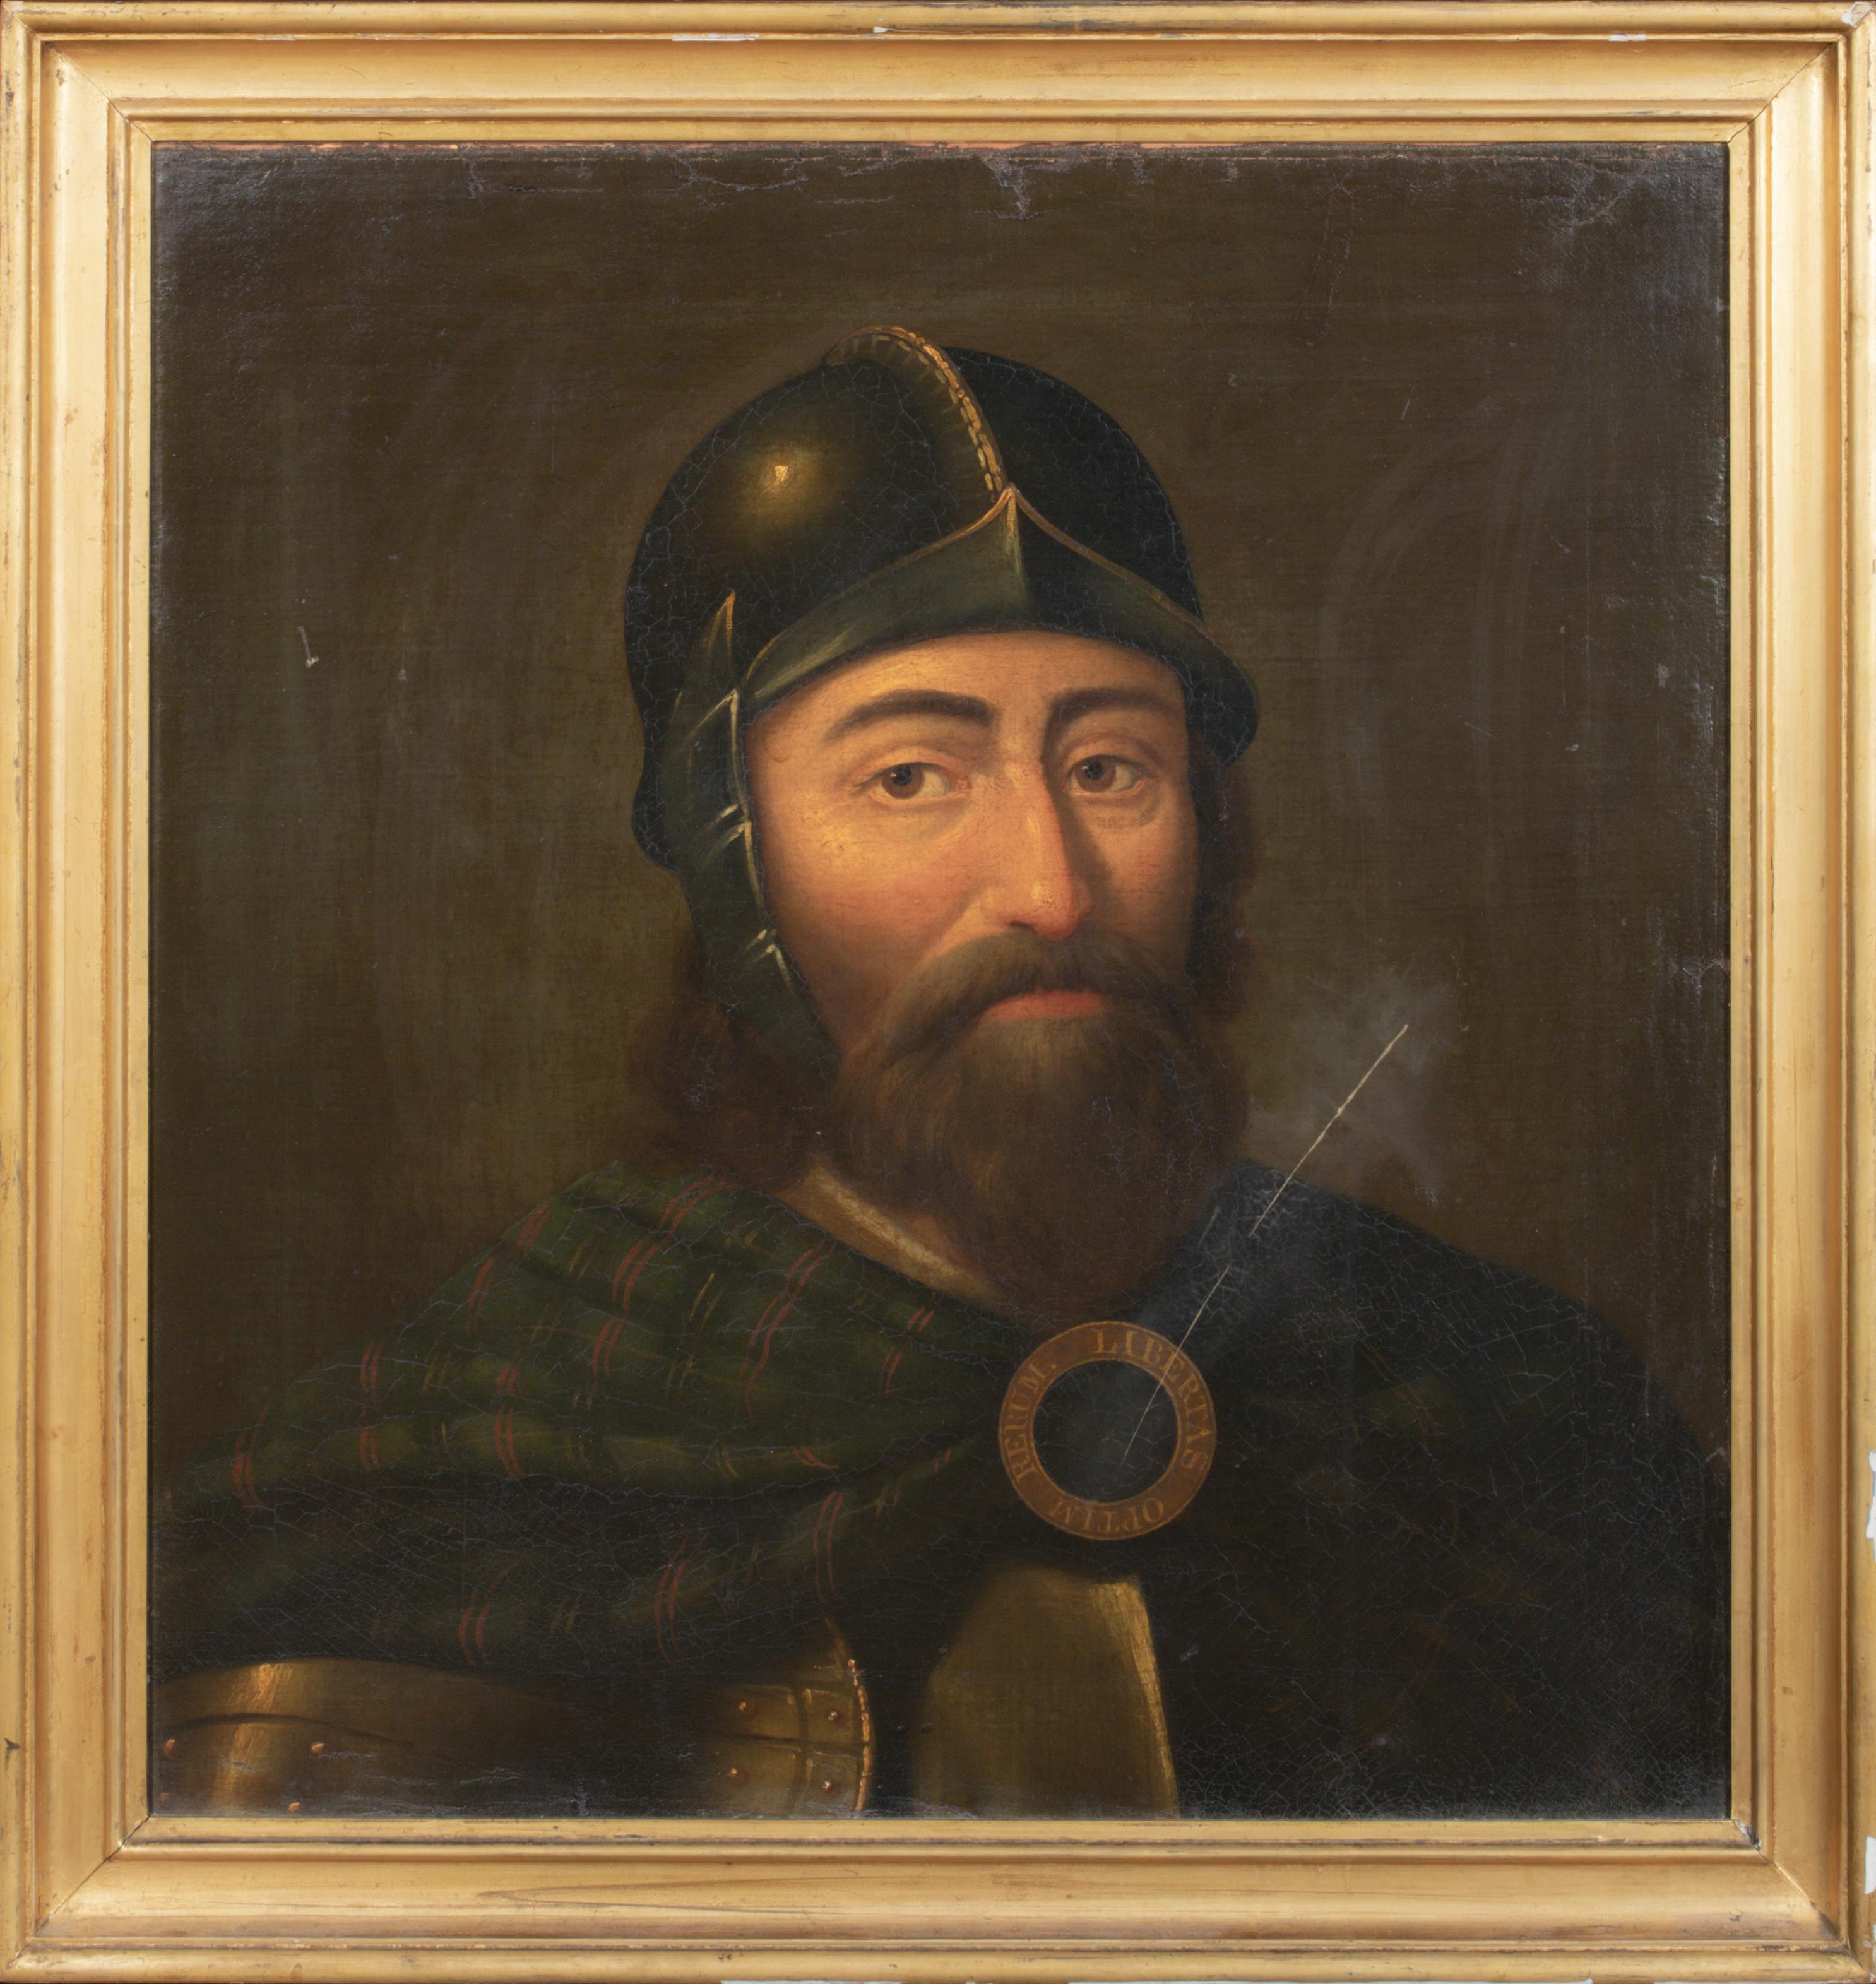 Porträt von William Wallace (1270-1305), um 1700 – Painting von Unknown